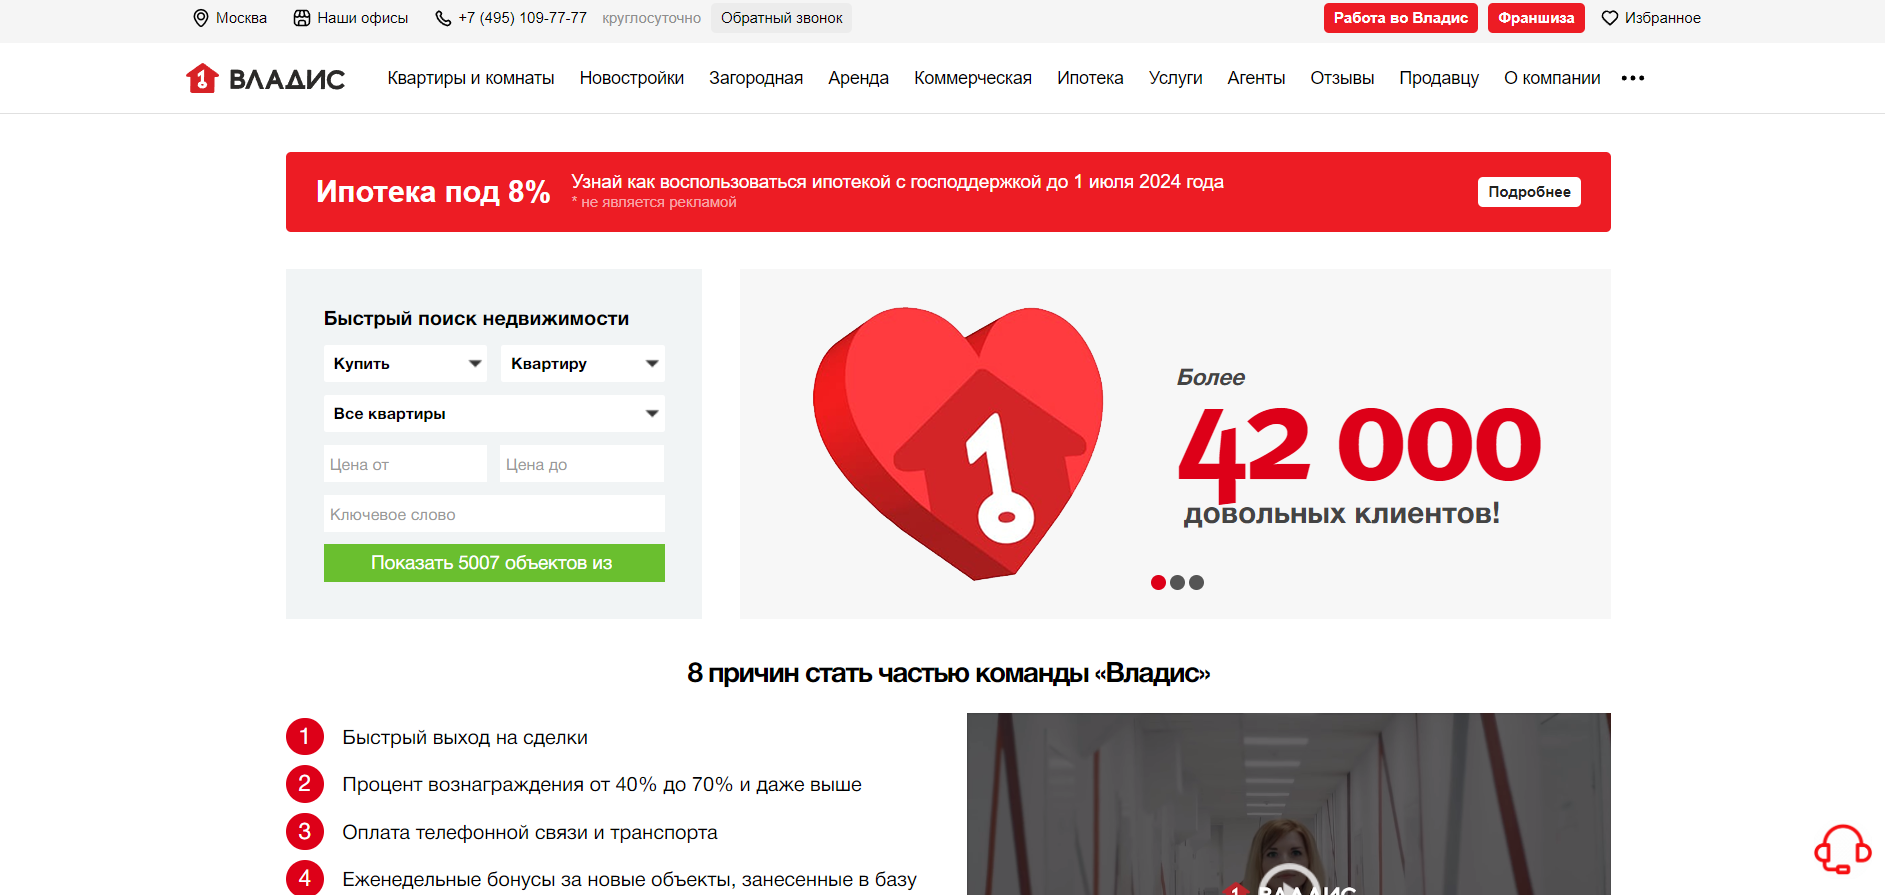 Агентство недвижимости Владис в Москве: Что нужно знать перед сотрудничеством